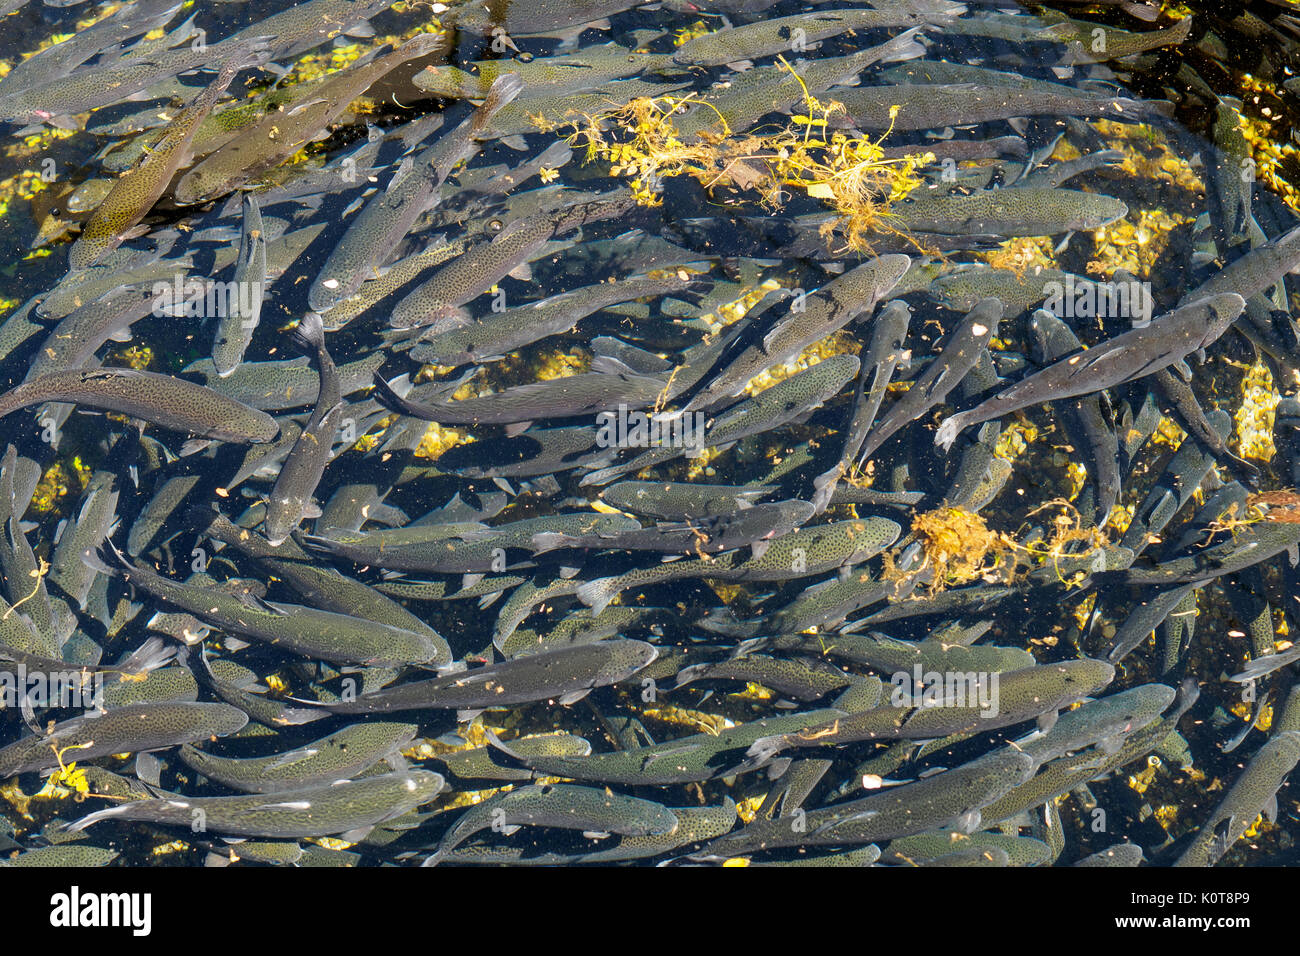 Forellen, die Landwirtschaft in den Fluss Clitunno in Umbrien (Italien). Querformat. Stockfoto